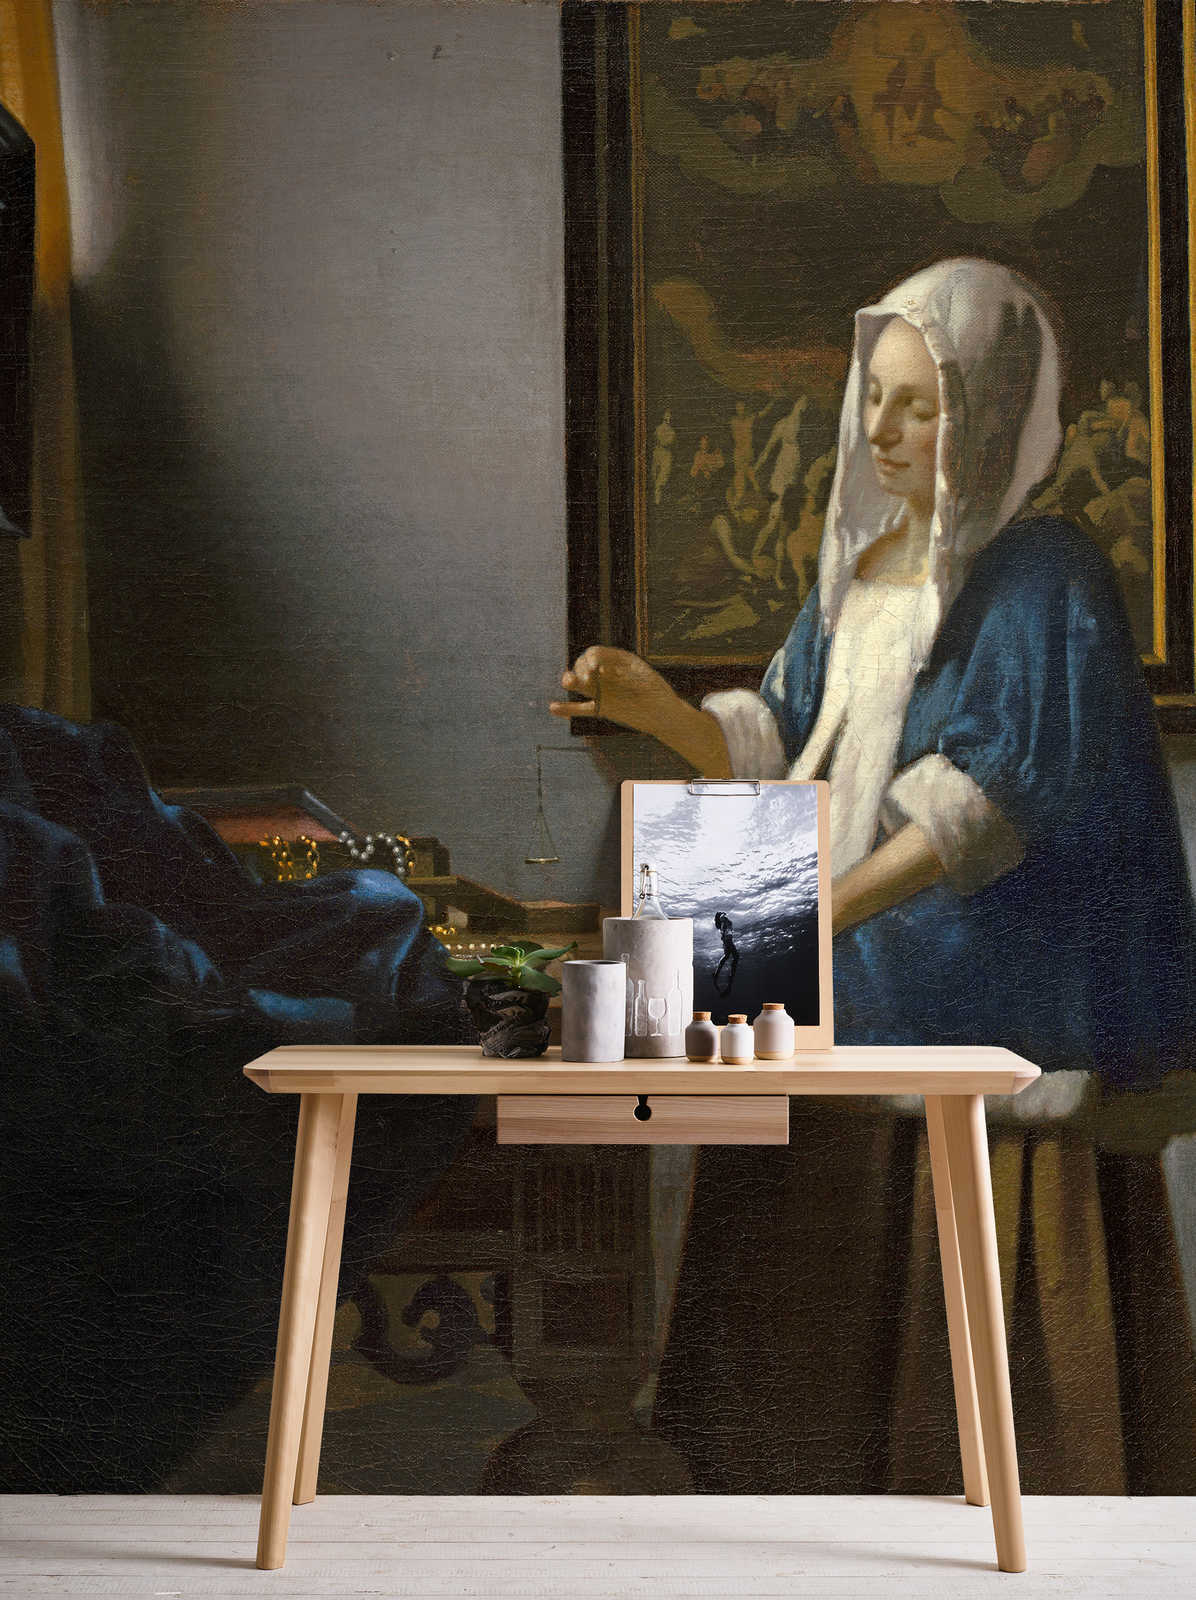             Fototapete "Frau mit Waage" von Jan Vermeer
        